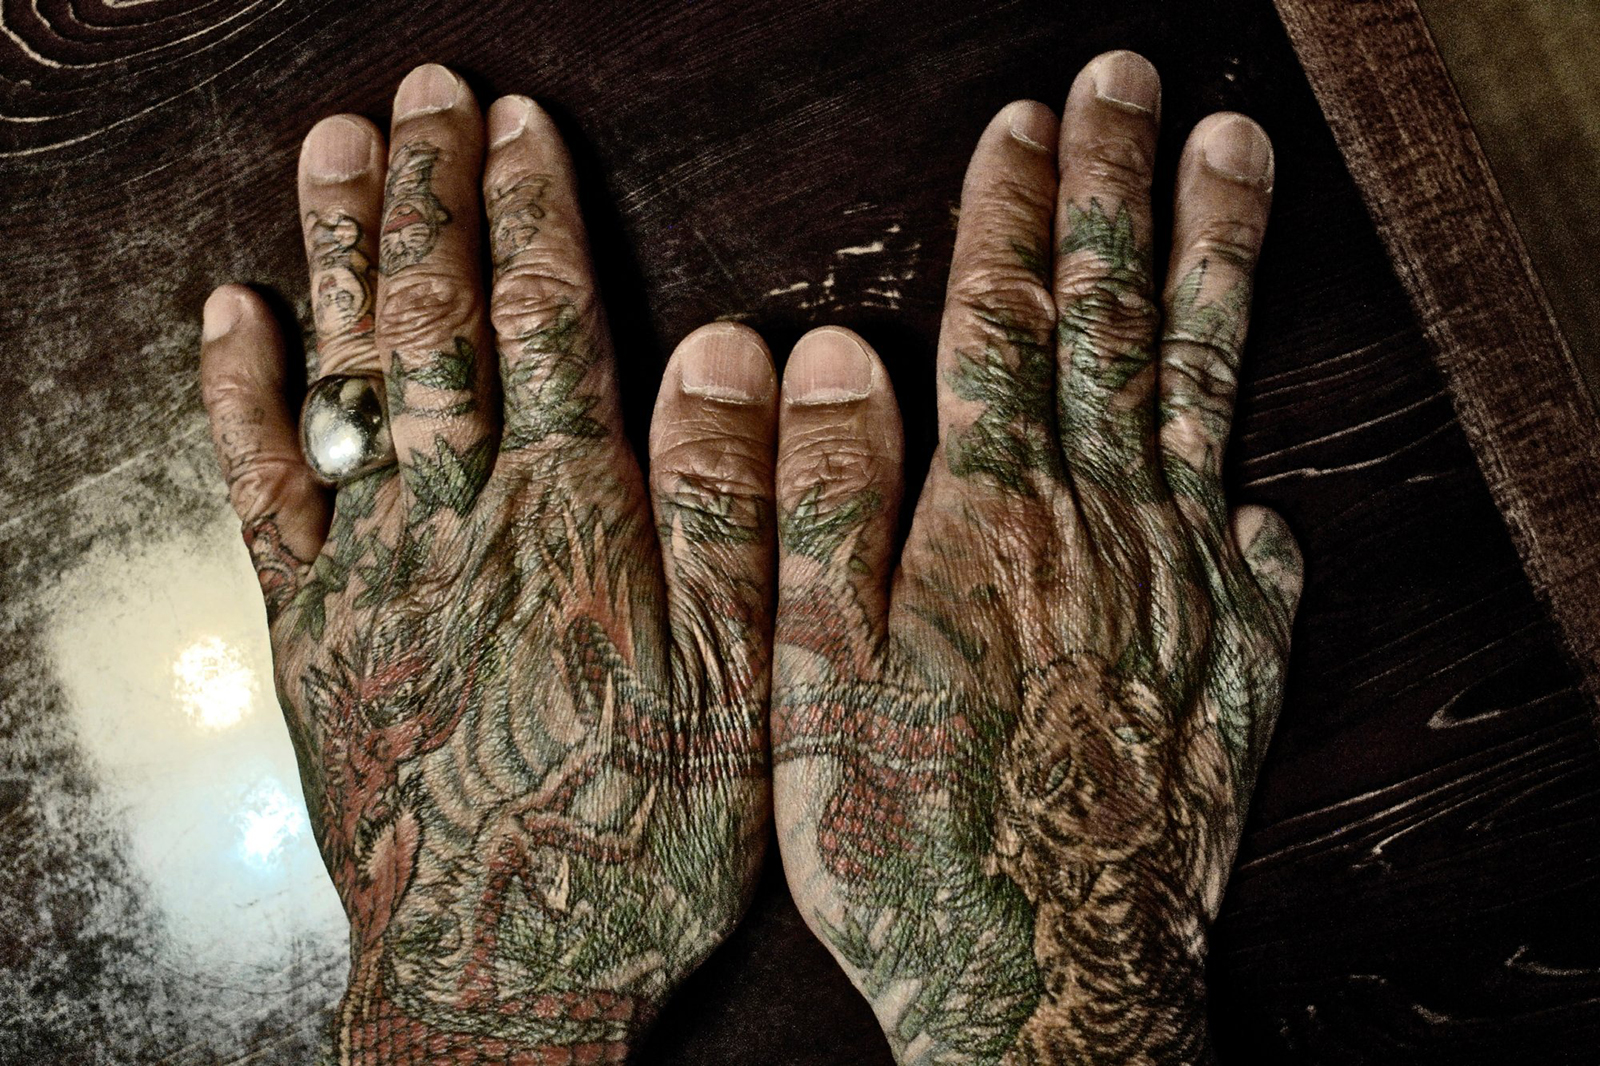 Yakuza hands